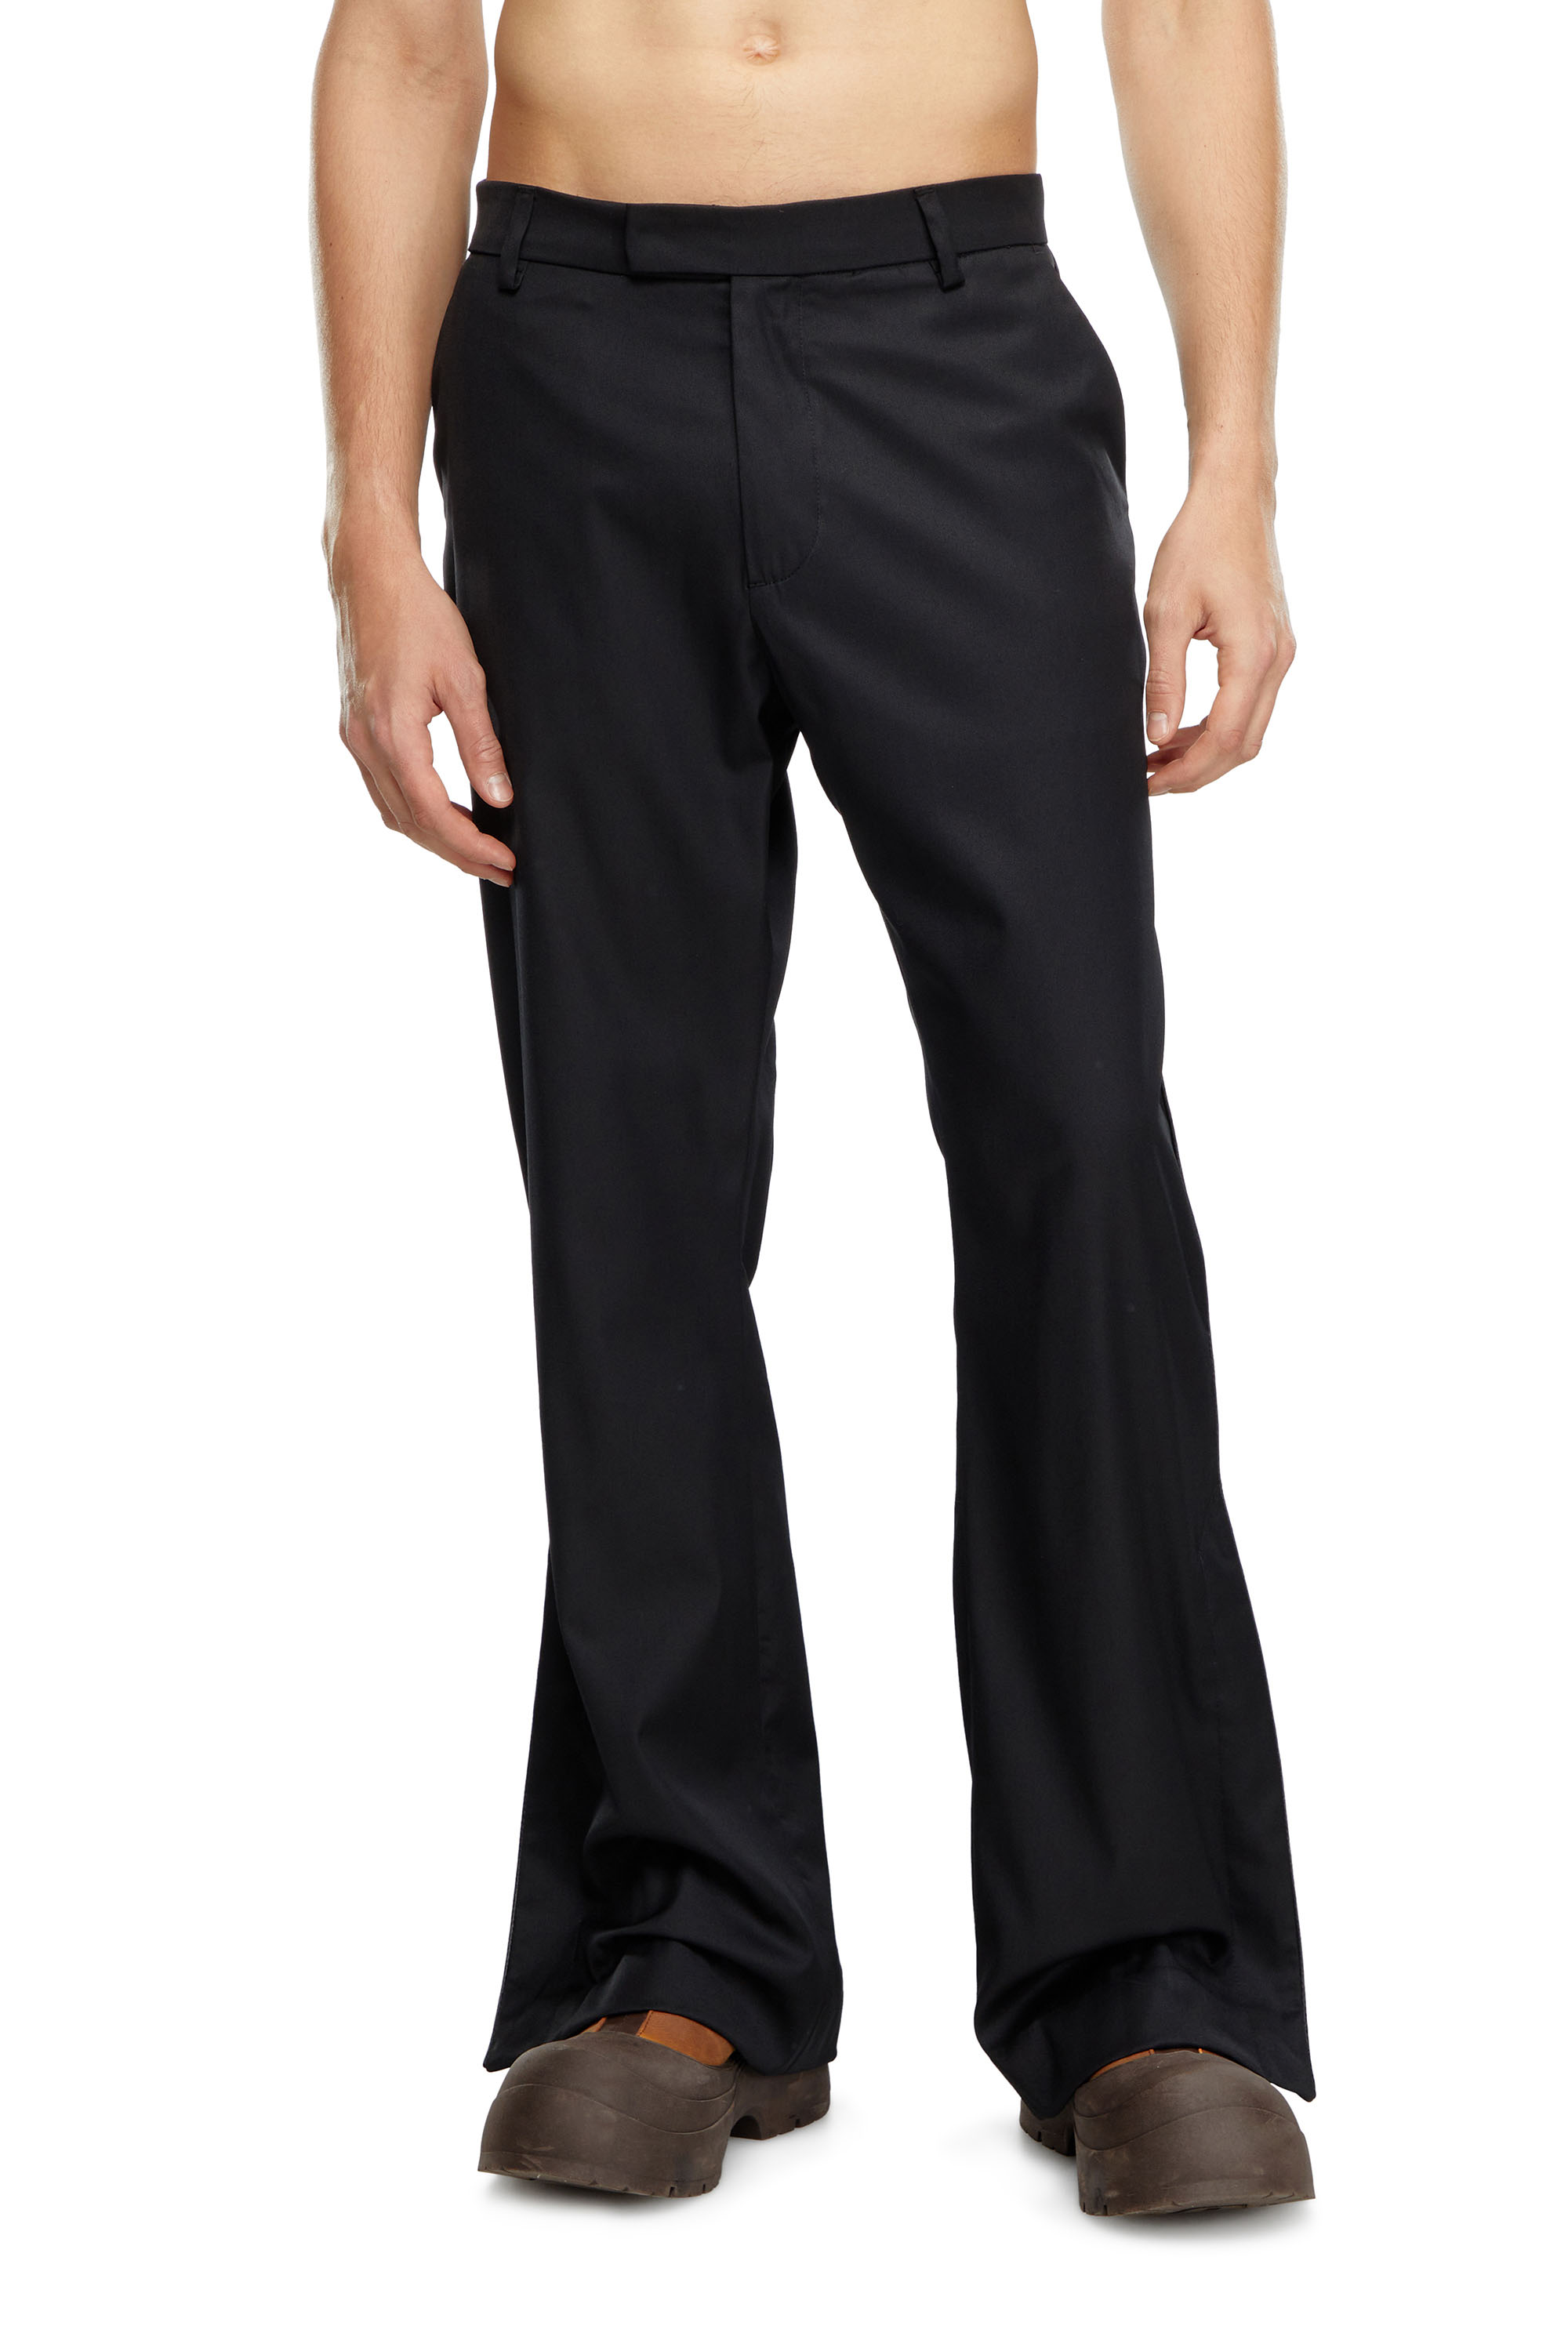 Men's pants and shorts: cargo, cotton, sweatpants | Diesel®